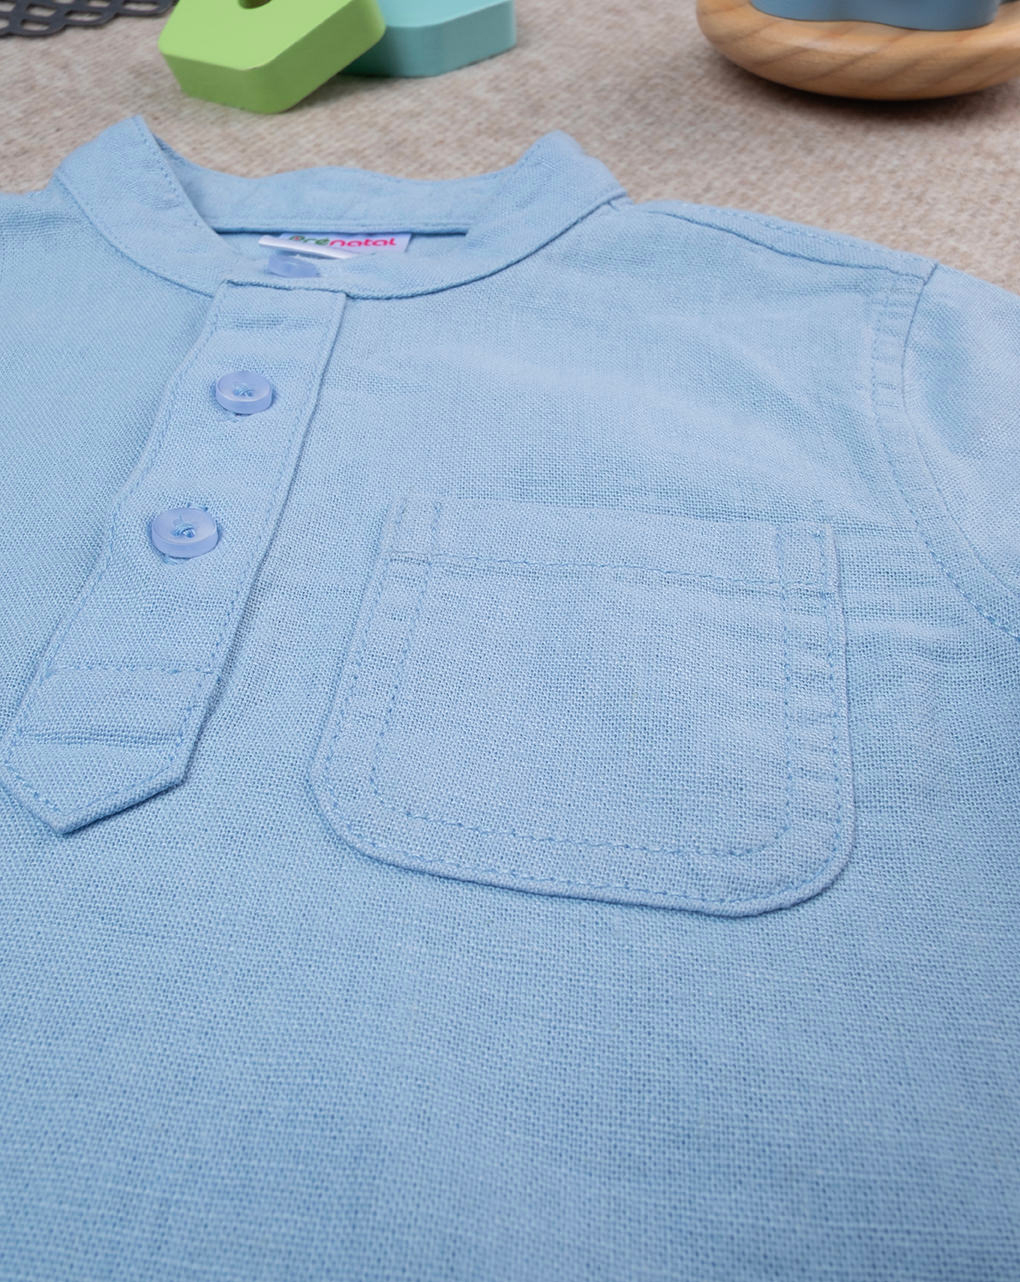 βρεφικό t-shirt πόλο λινό γαλάζιο για αγόρι - Prénatal